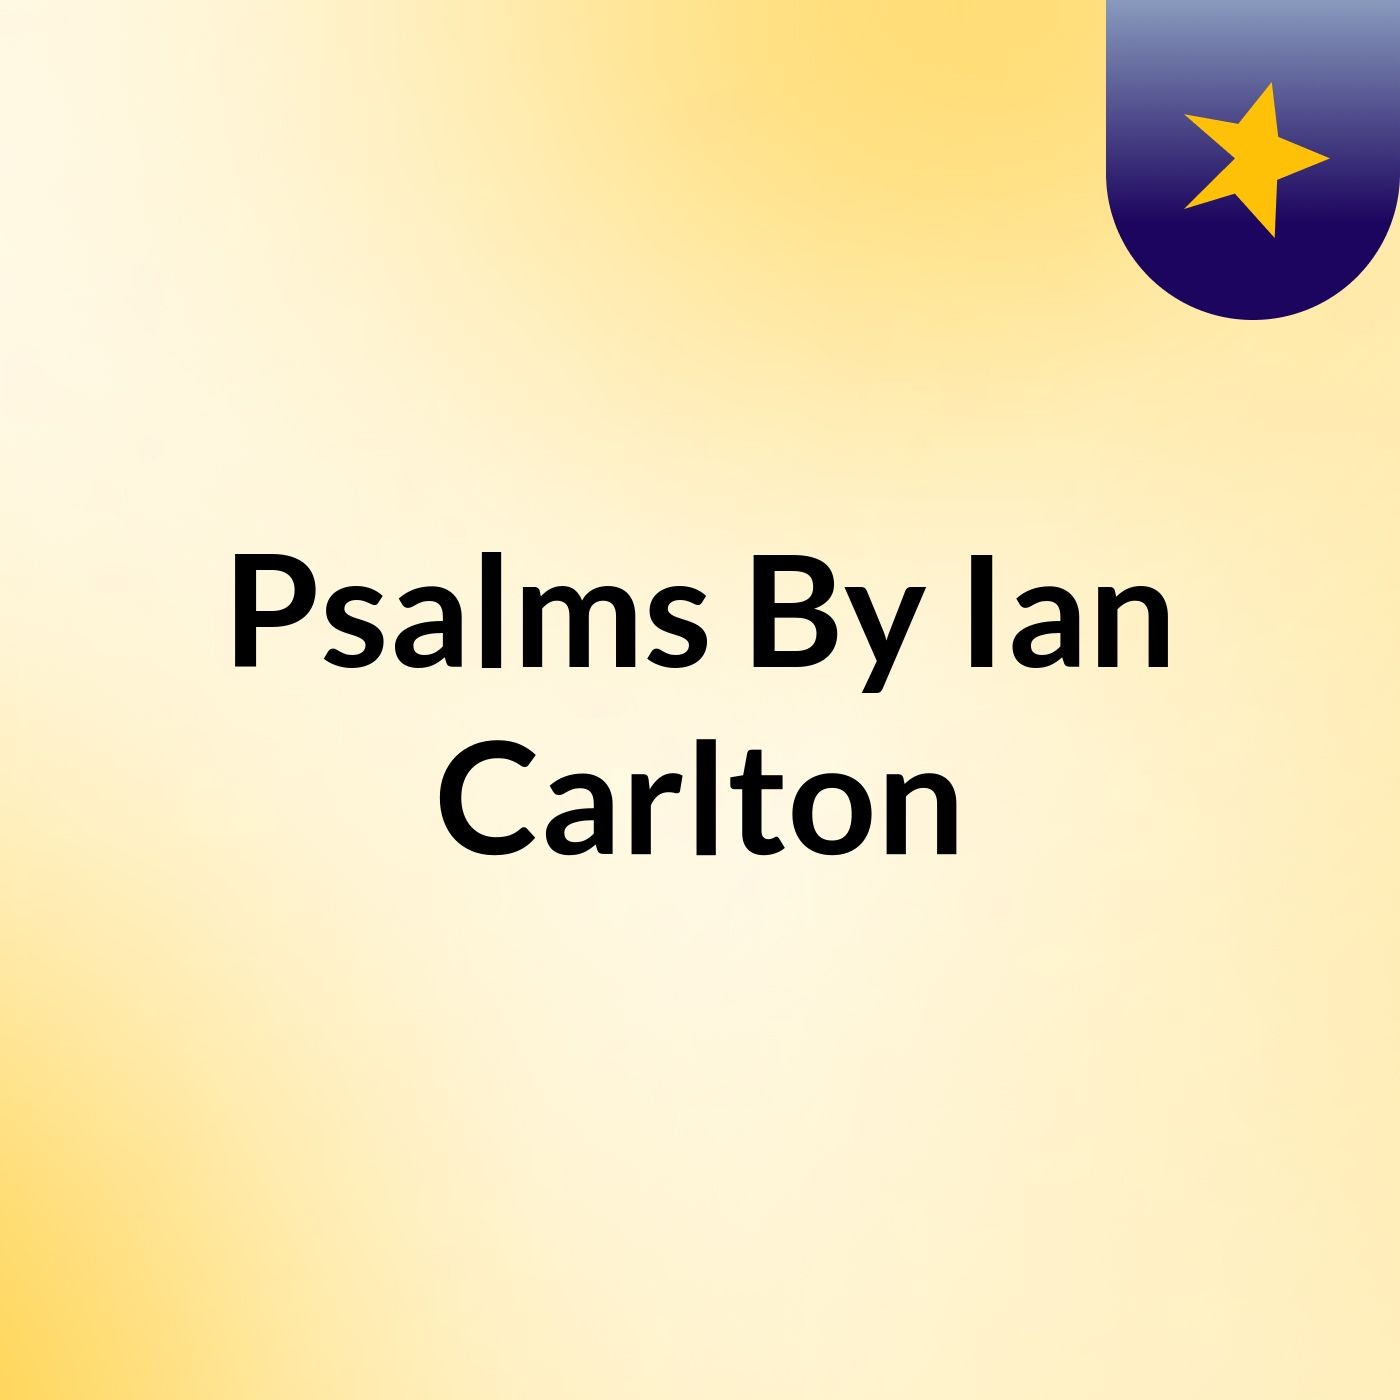 Episode 21 - Psalms By: Ian & Carlton